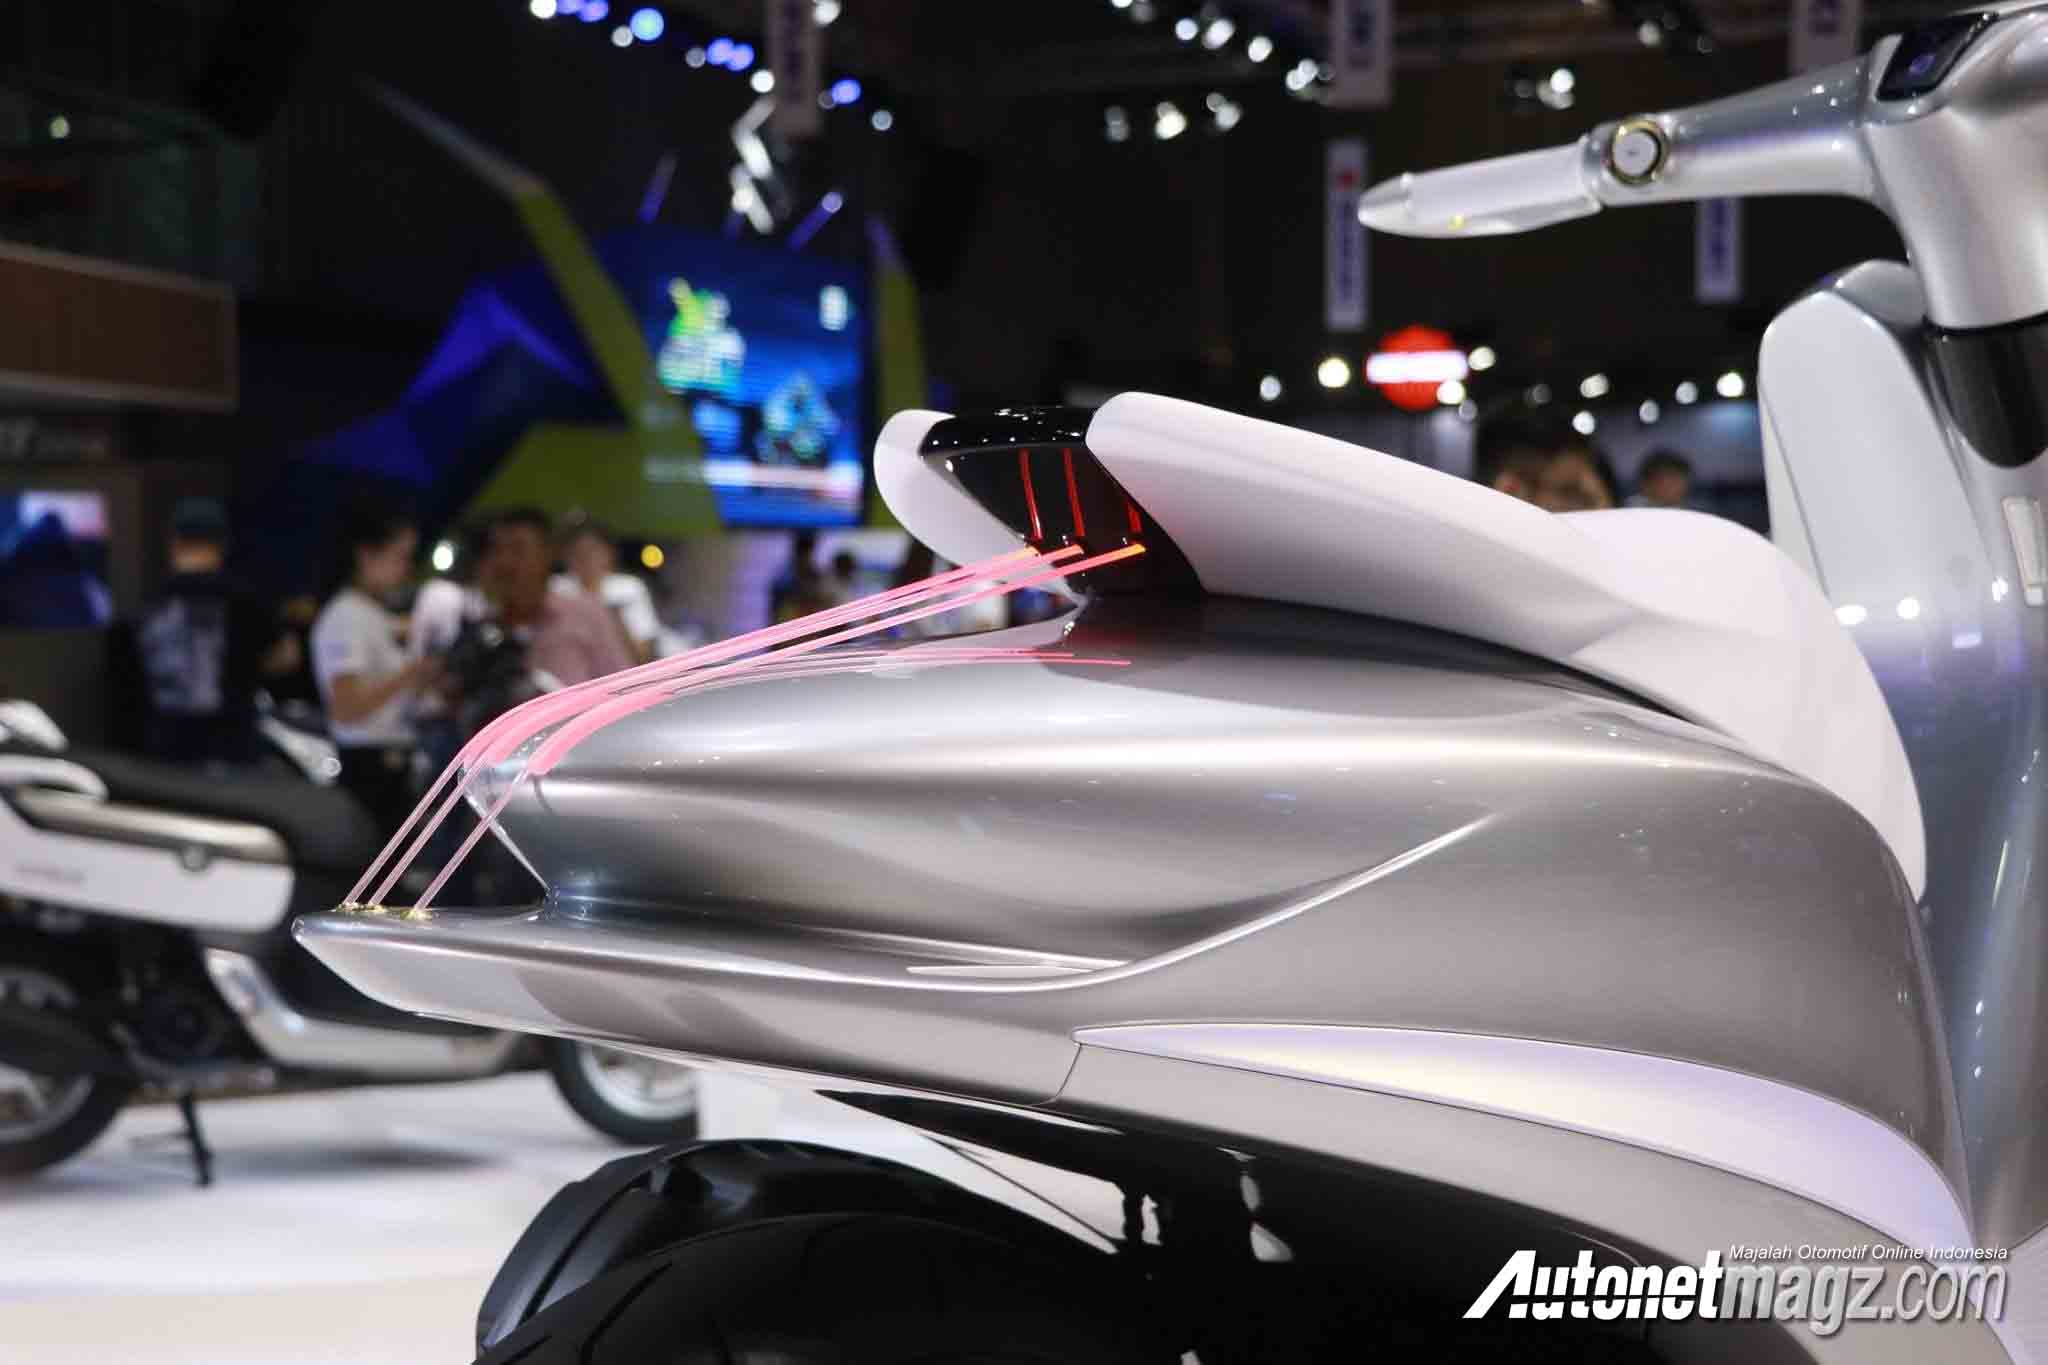 Berita, buritan Yamaha Glorious: Yamaha Perkenalkan Glorious Concept, Skutik Cantik Nan Futuristis